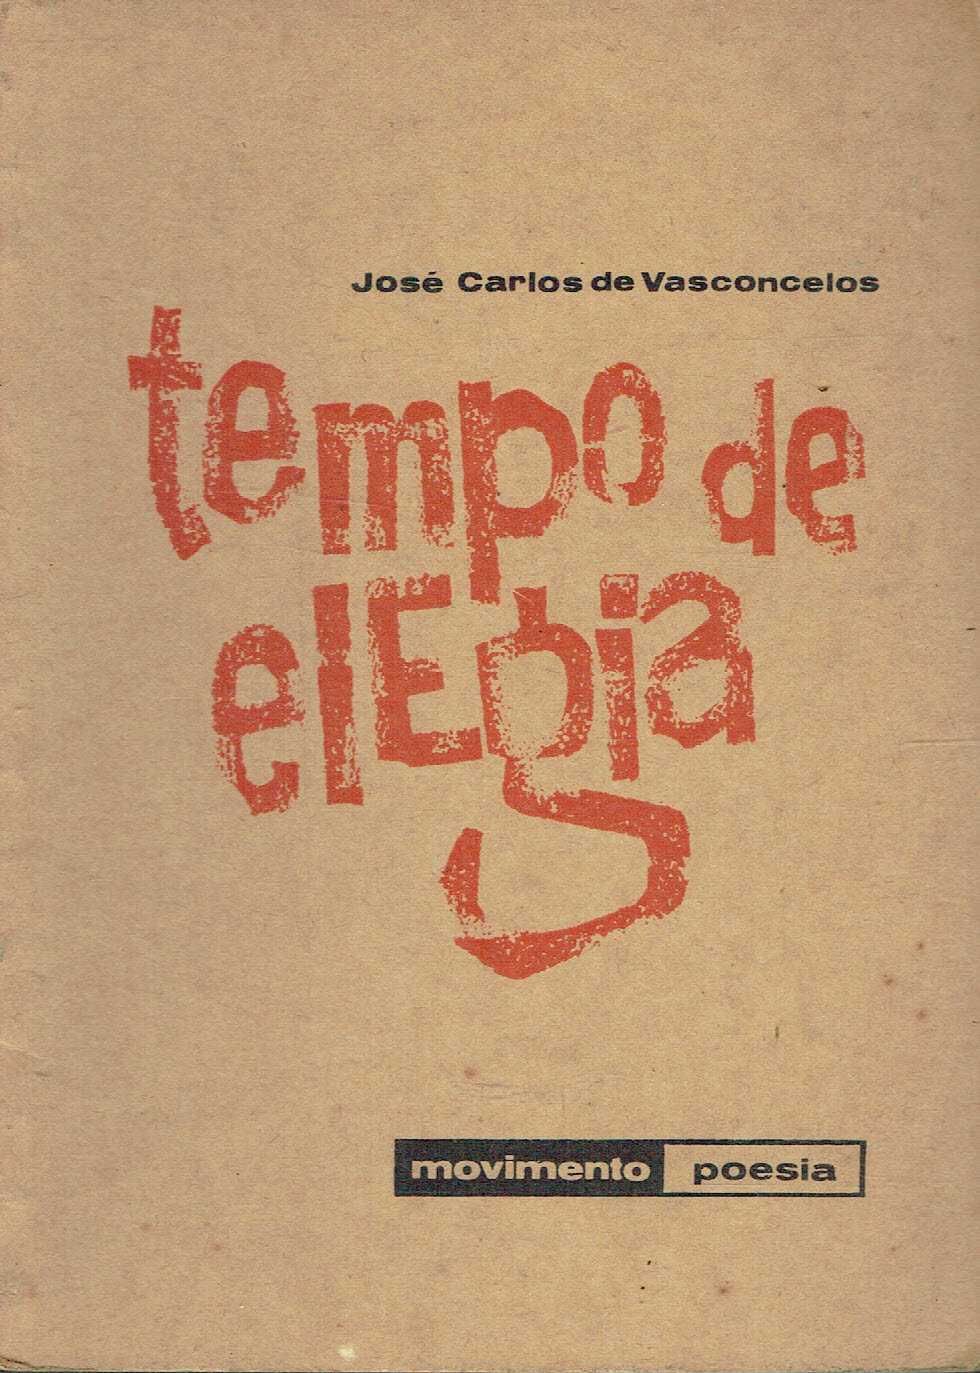 14259

Tempo de Elegia
de José Carlos de Vasconcelos